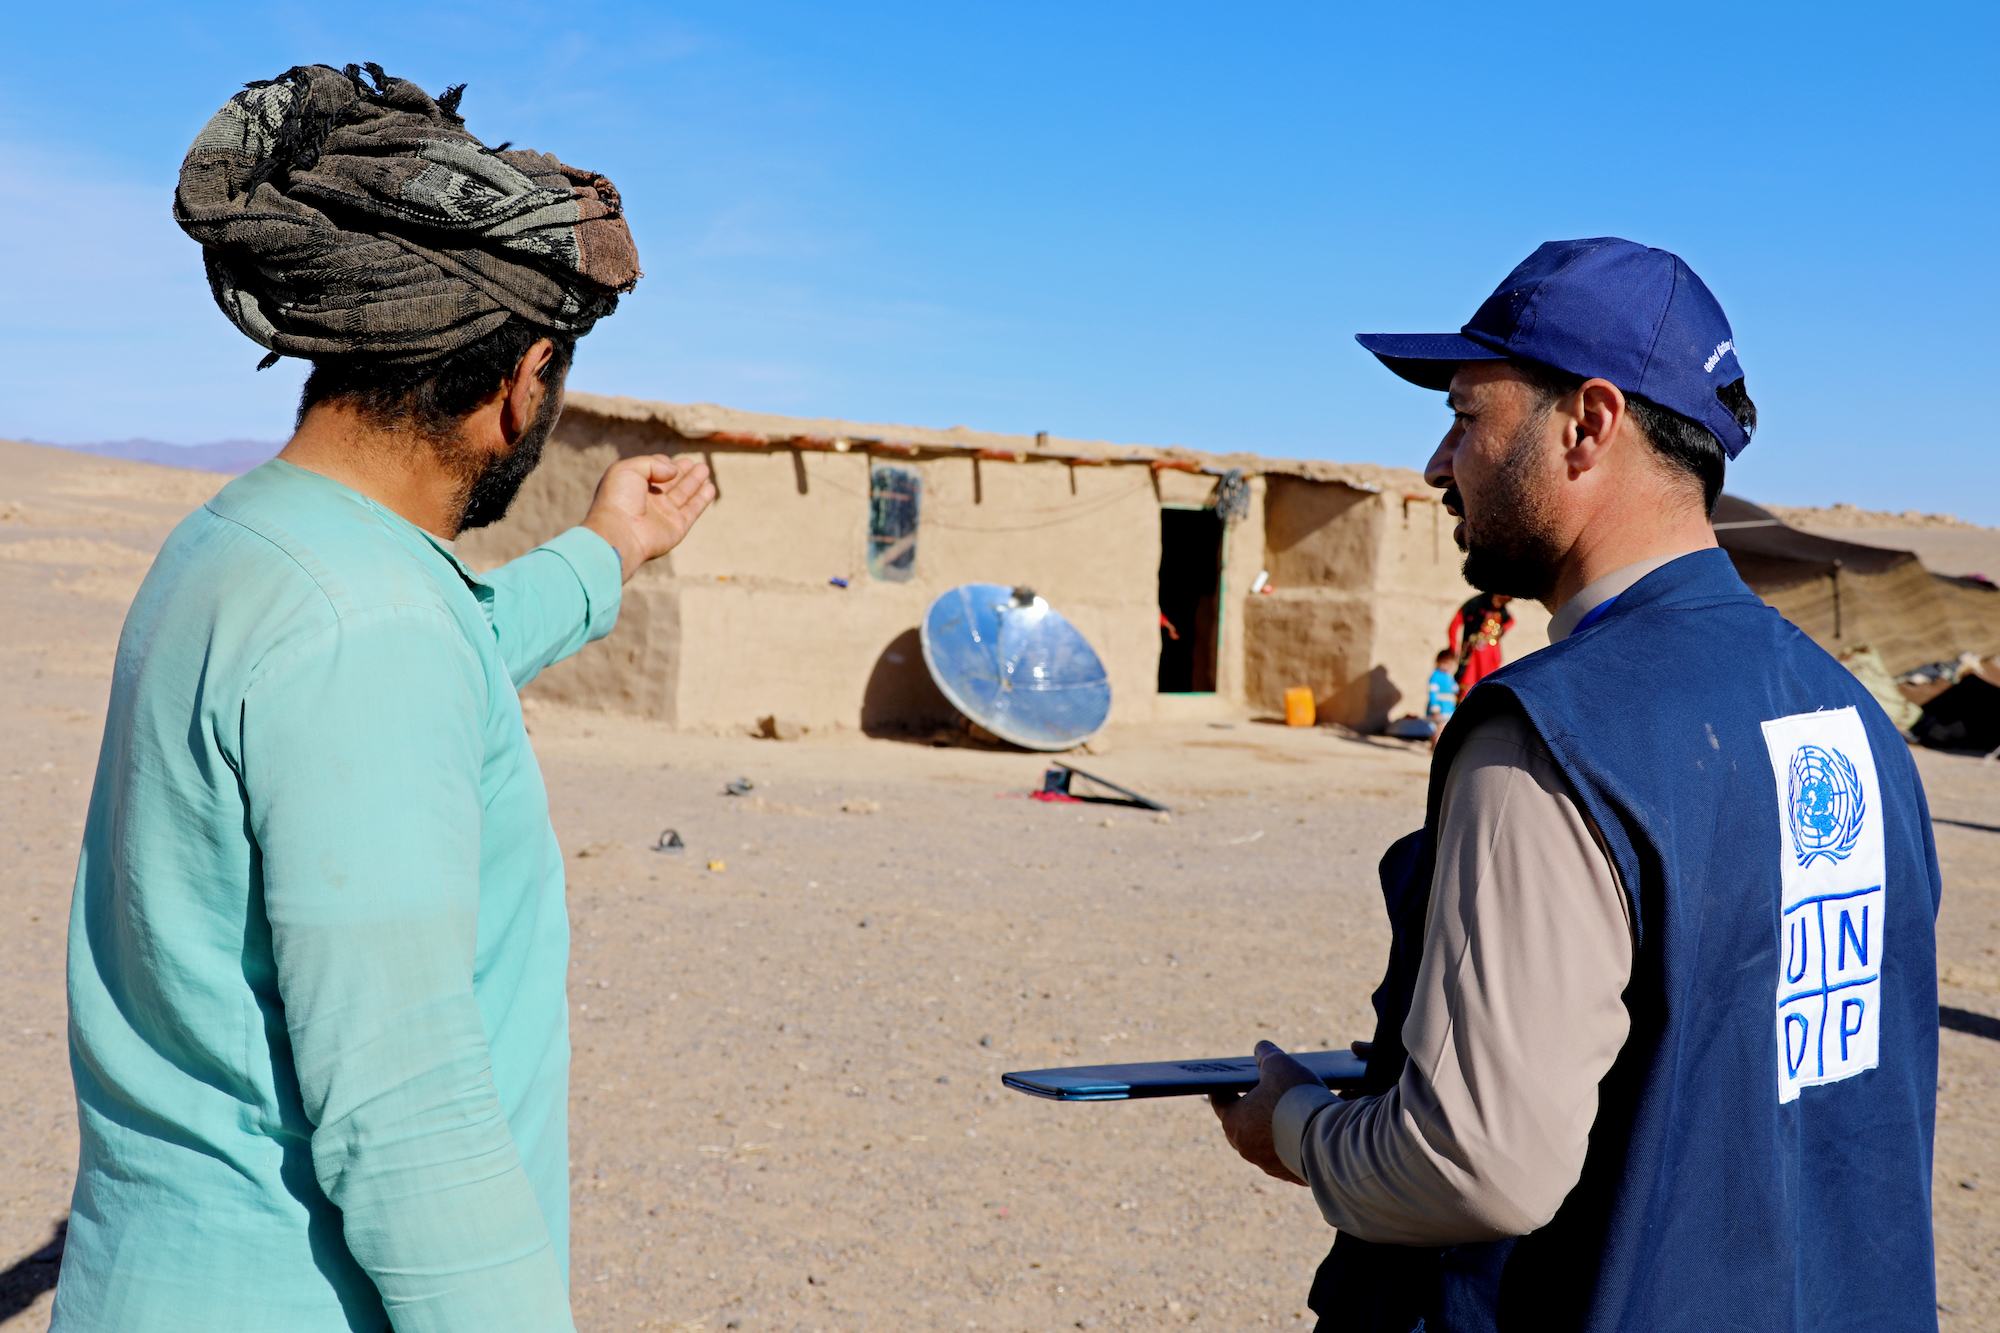 یو این ڈی پی نے افغانستان کے زلزلے سے متاثرہ علاقوں میں شمسی توانائی سے چلنے والے چولہے تقسیم کیے ہیں۔